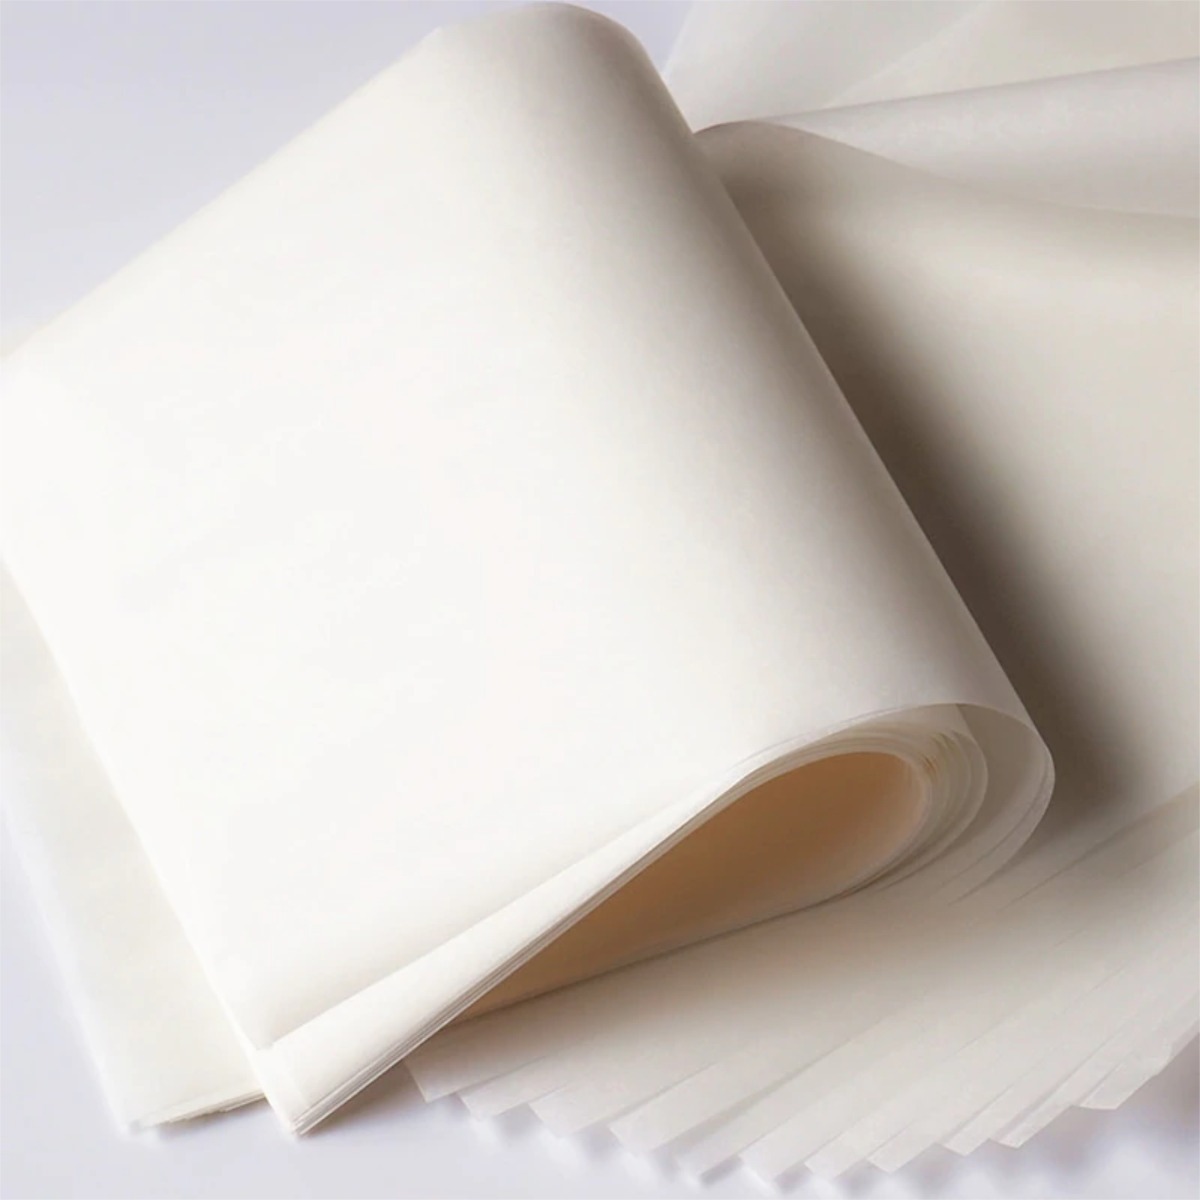 Resma Papel Antigrasa Blanco sin impresión (78×100 – 500 hojas) – CONVEPA